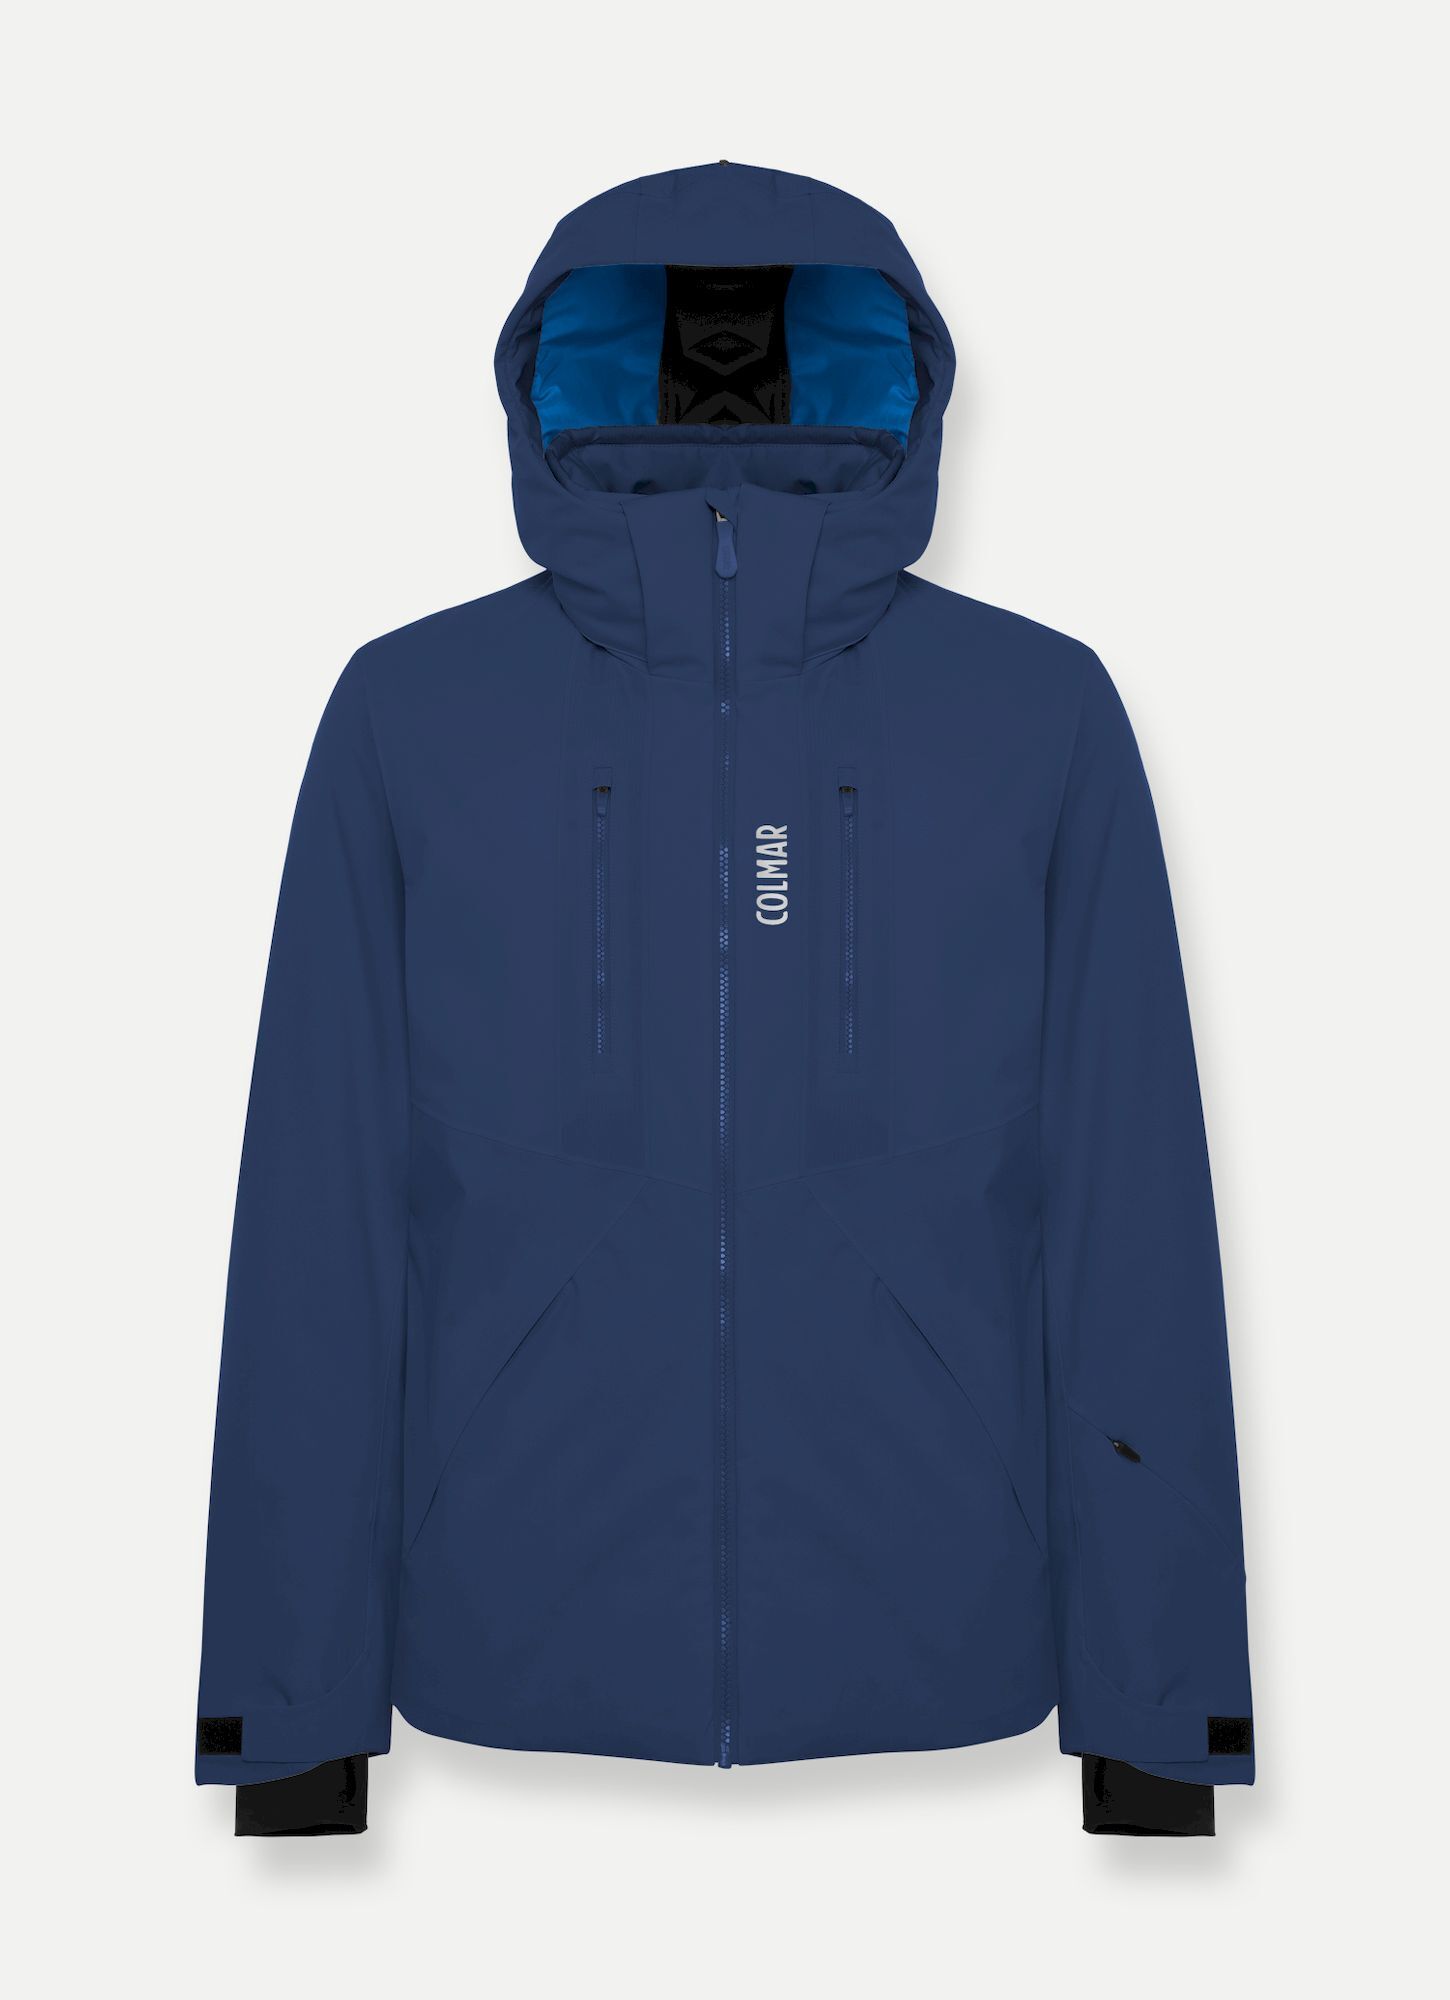 Colmar Mens Ski Jacket - Ski jacket - Men's